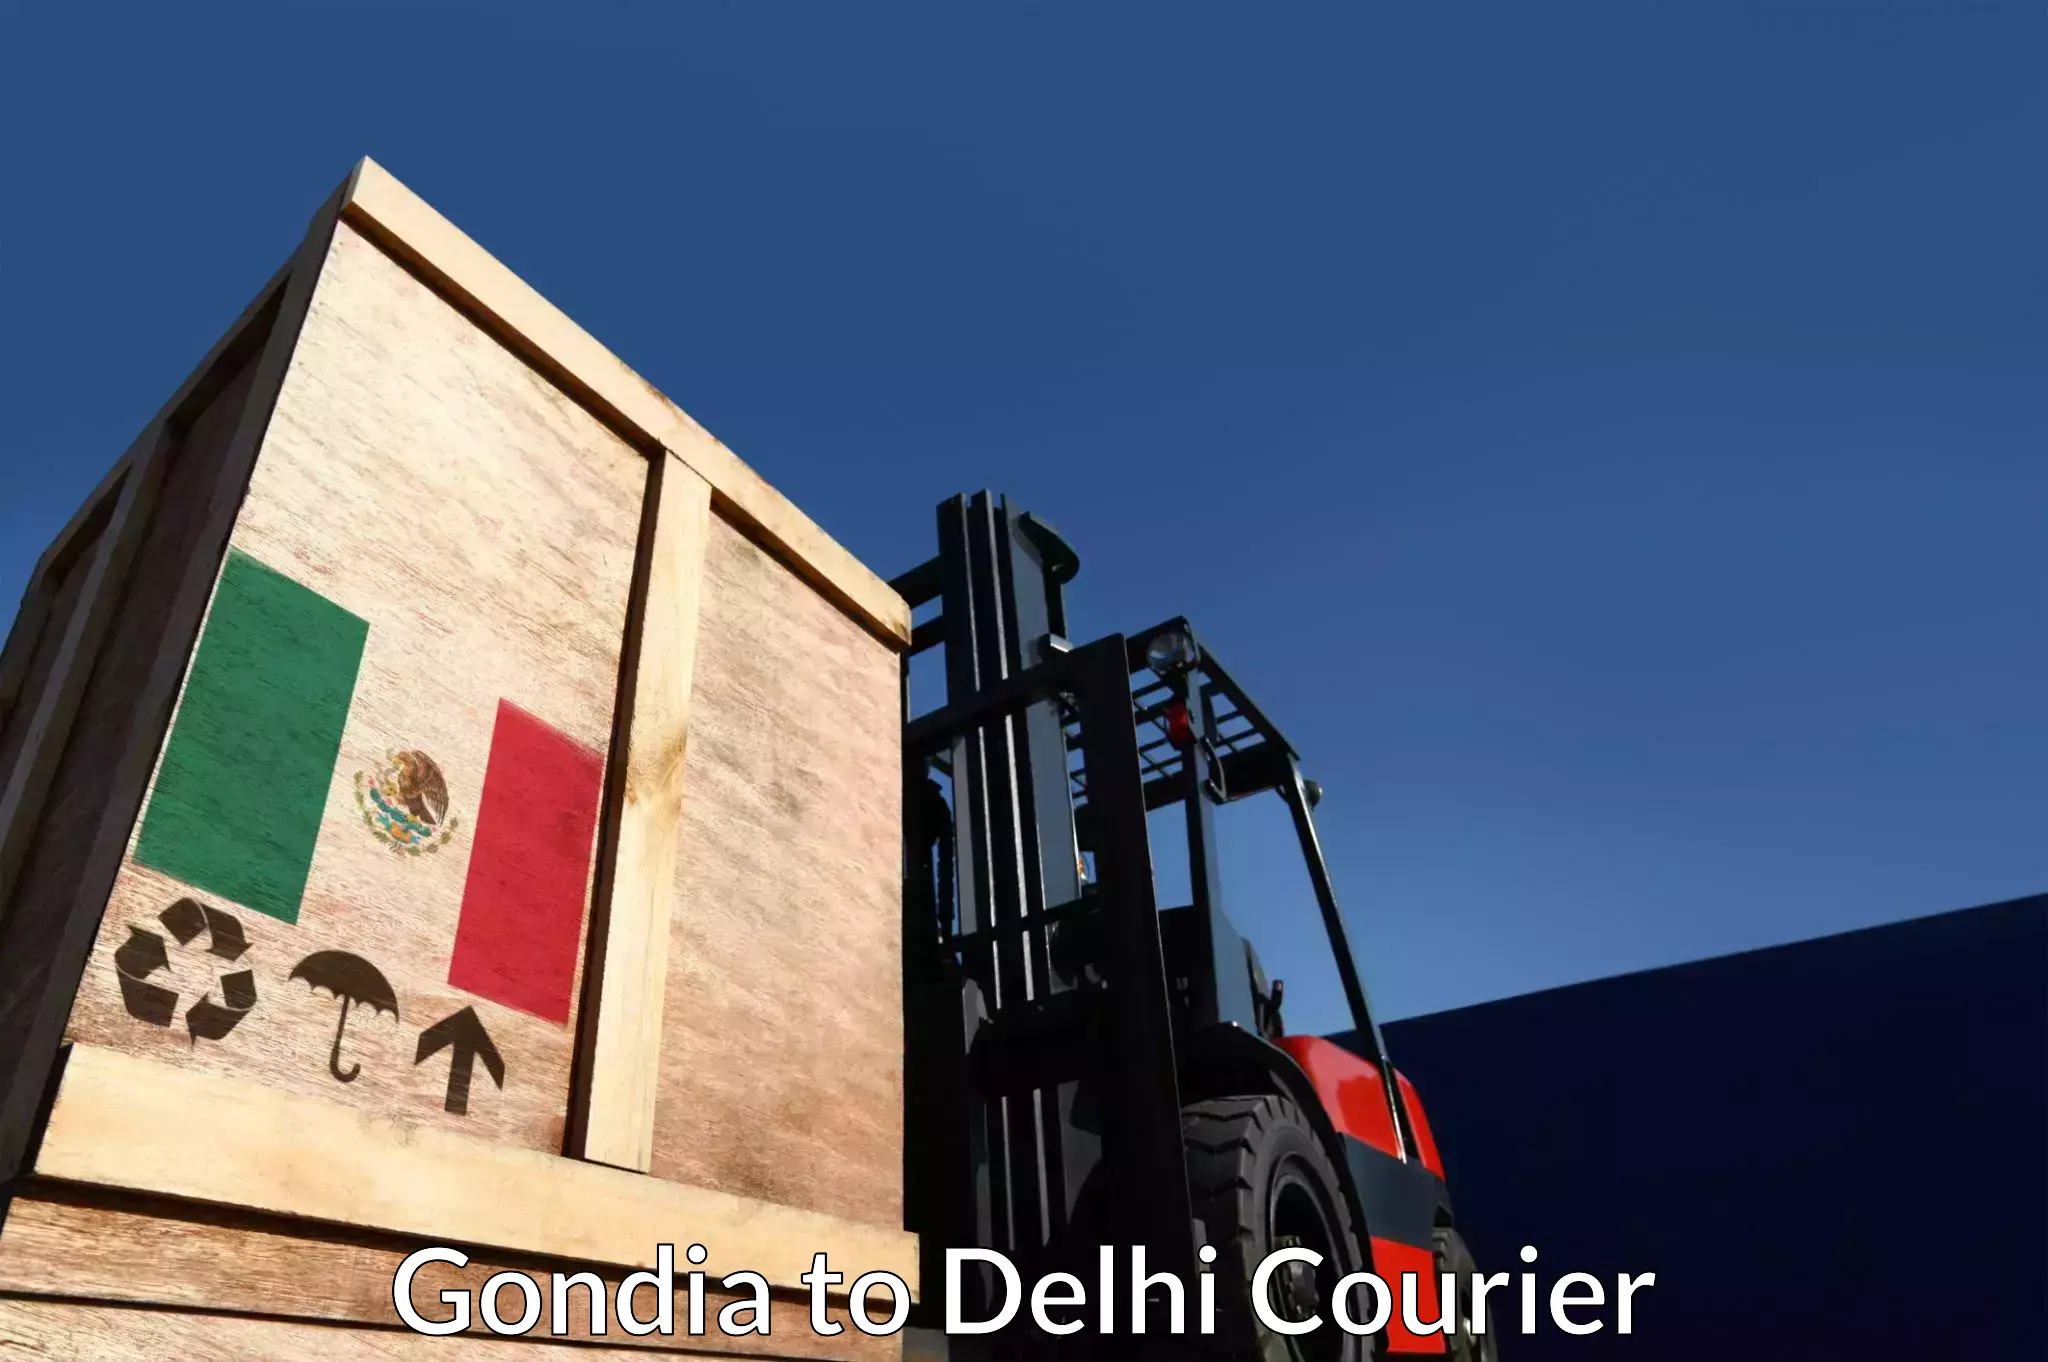 Doorstep delivery service Gondia to Delhi